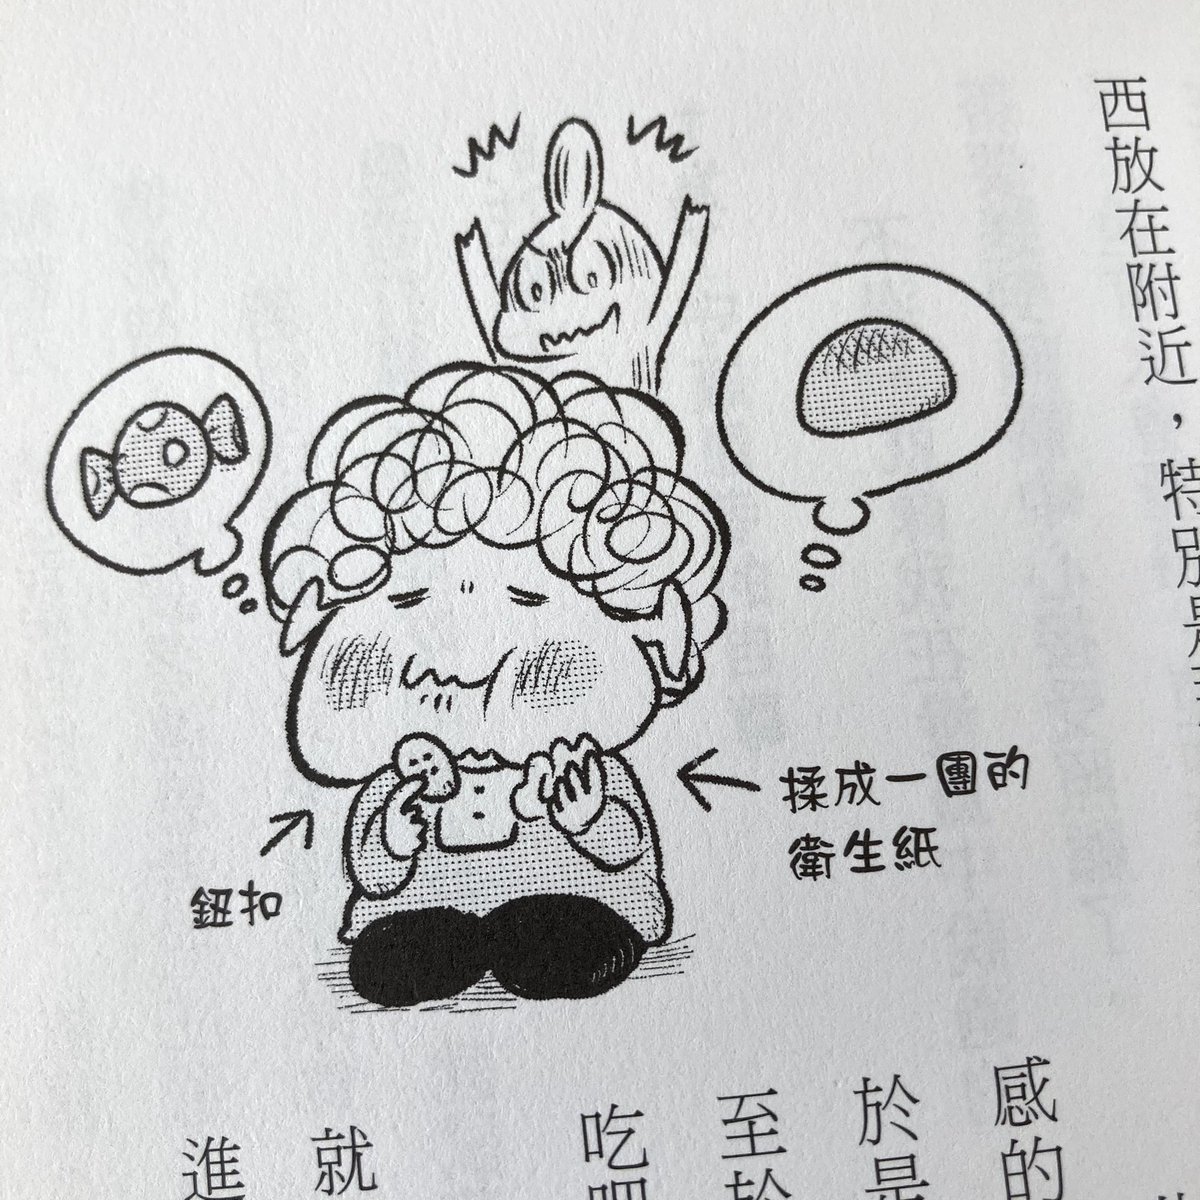 「マンガ認知症」の台湾版が東販出版さんから発売です。日本版より少し大きめで読みやすそう。中国語でも漢字の雰囲気でけっこうわかるもんですね。手書きで描いた犬の「チェッ」というセリフまでちゃんと翻訳してあって嬉しい。台湾でもたくさん読んでもらえますように??

#失智症 #漫畫 